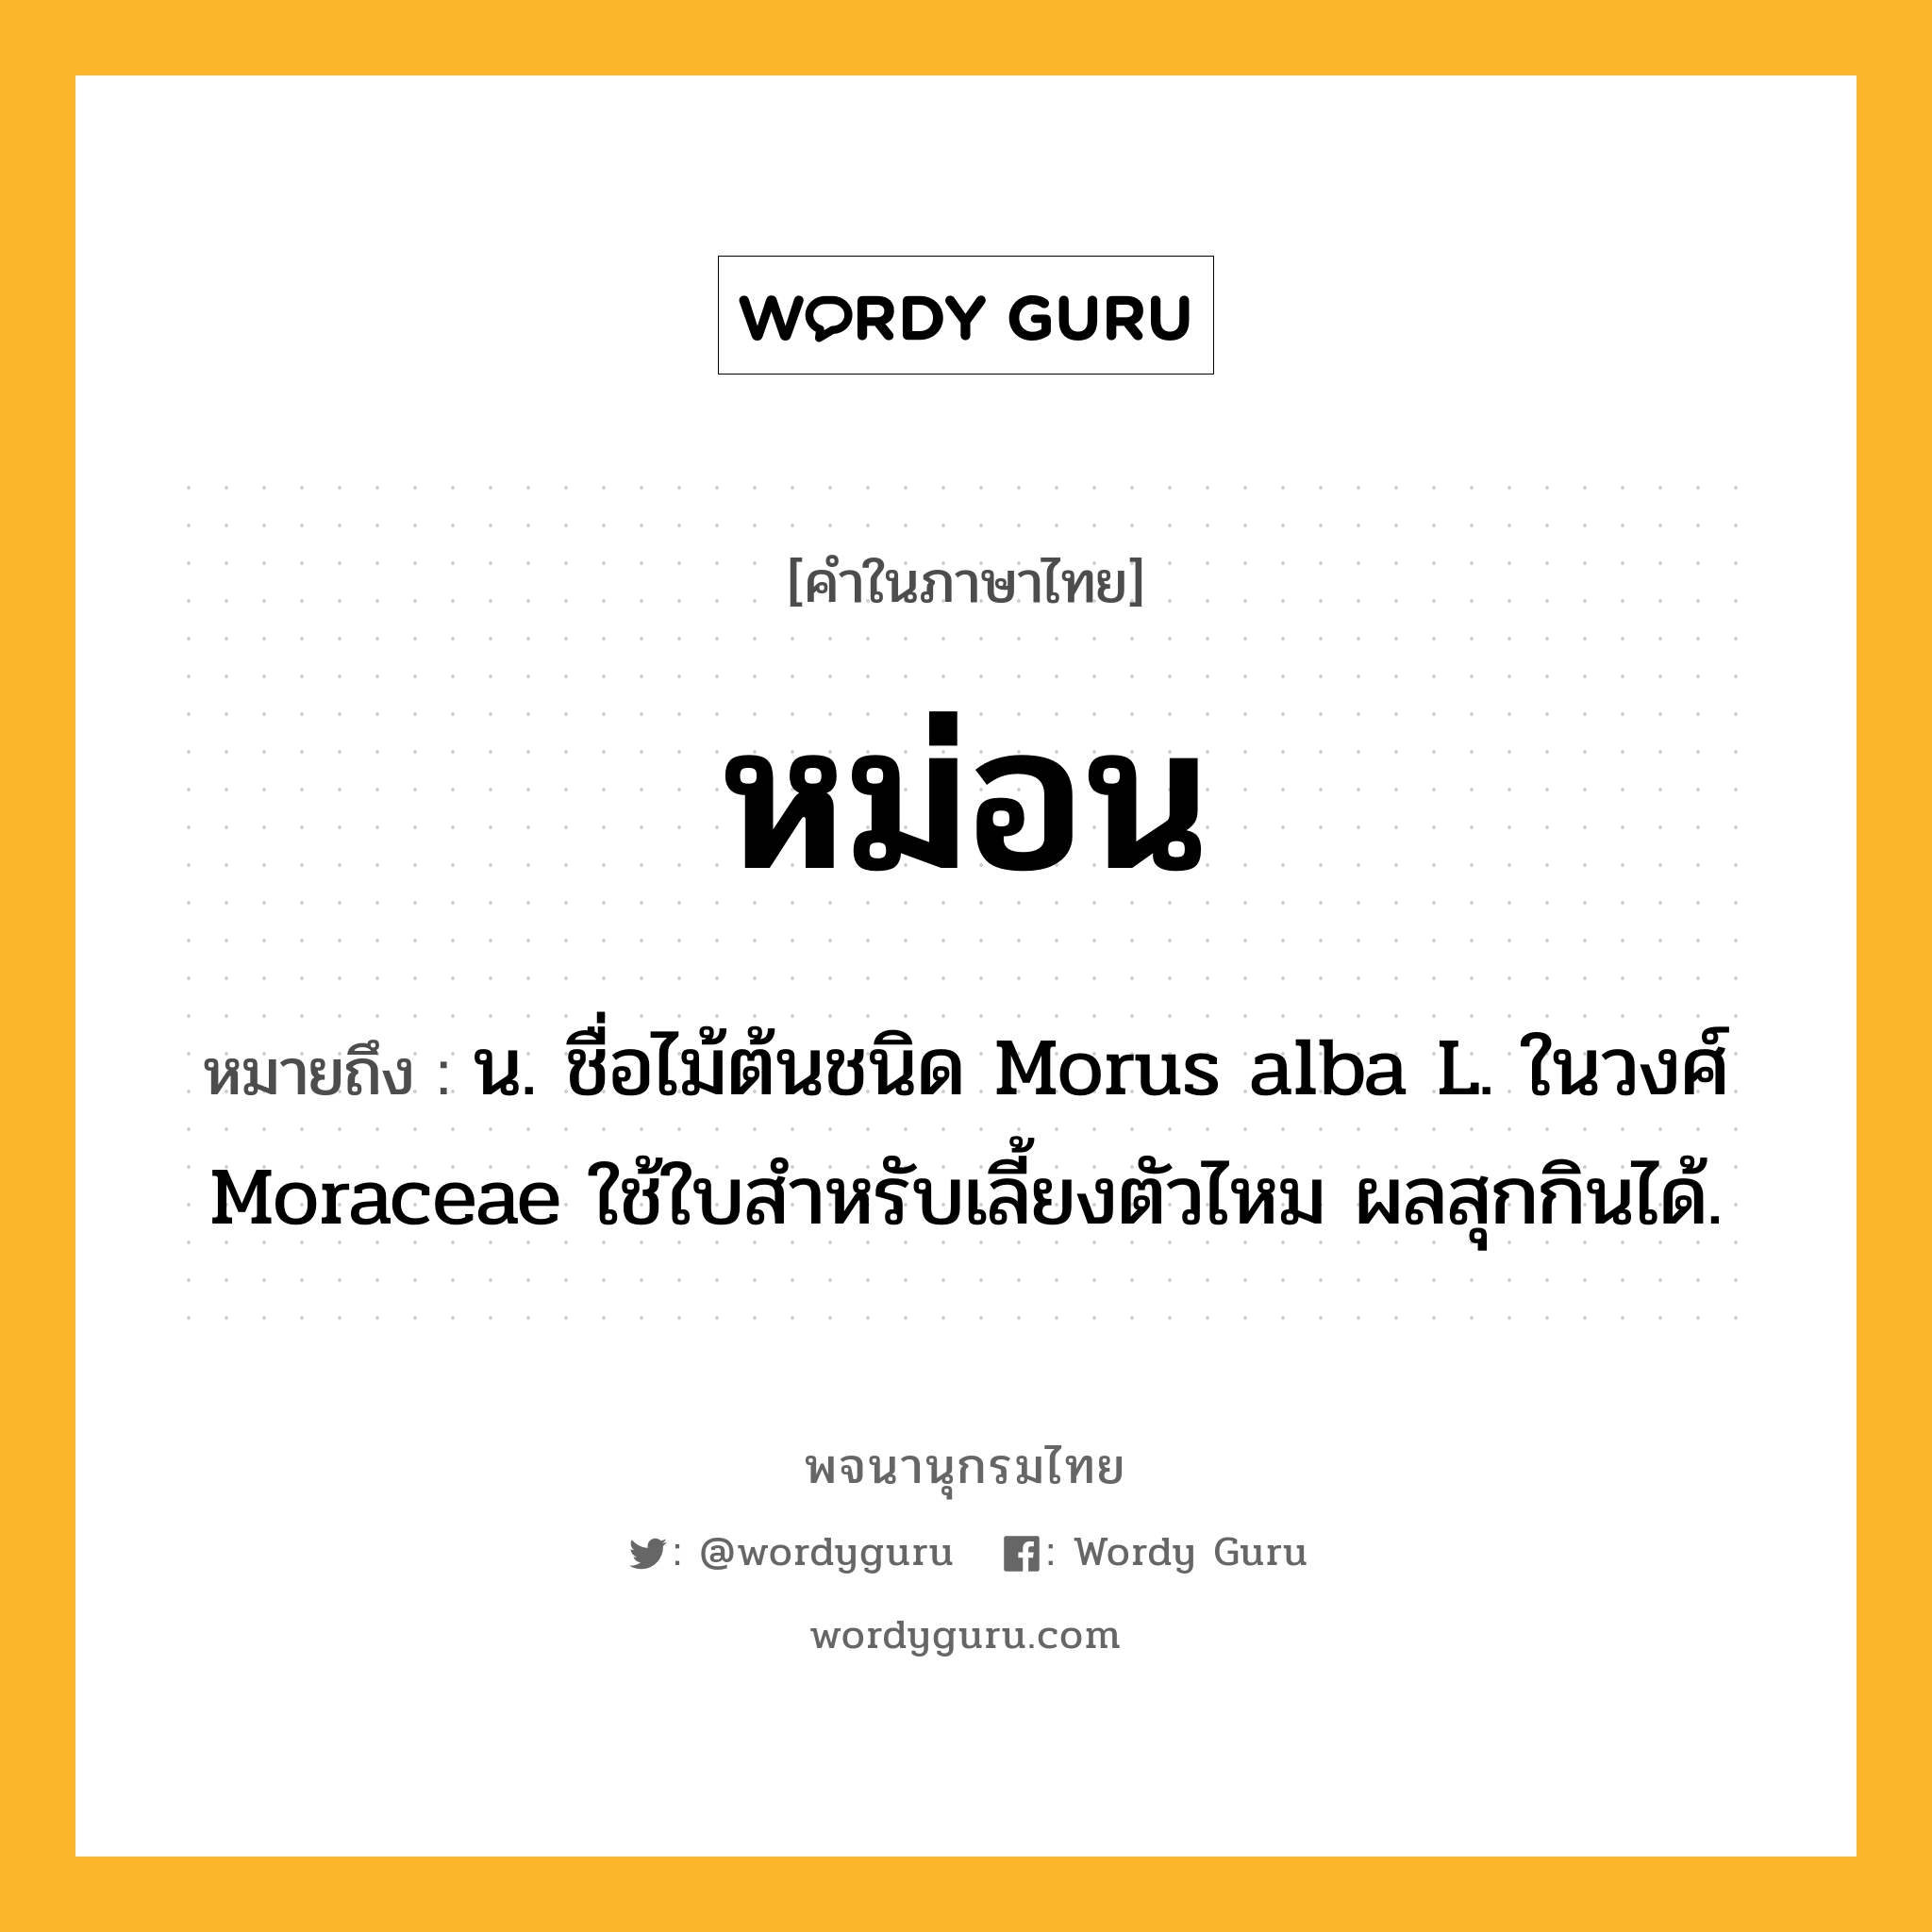 หม่อน ความหมาย หมายถึงอะไร?, คำในภาษาไทย หม่อน หมายถึง น. ชื่อไม้ต้นชนิด Morus alba L. ในวงศ์ Moraceae ใช้ใบสําหรับเลี้ยงตัวไหม ผลสุกกินได้.